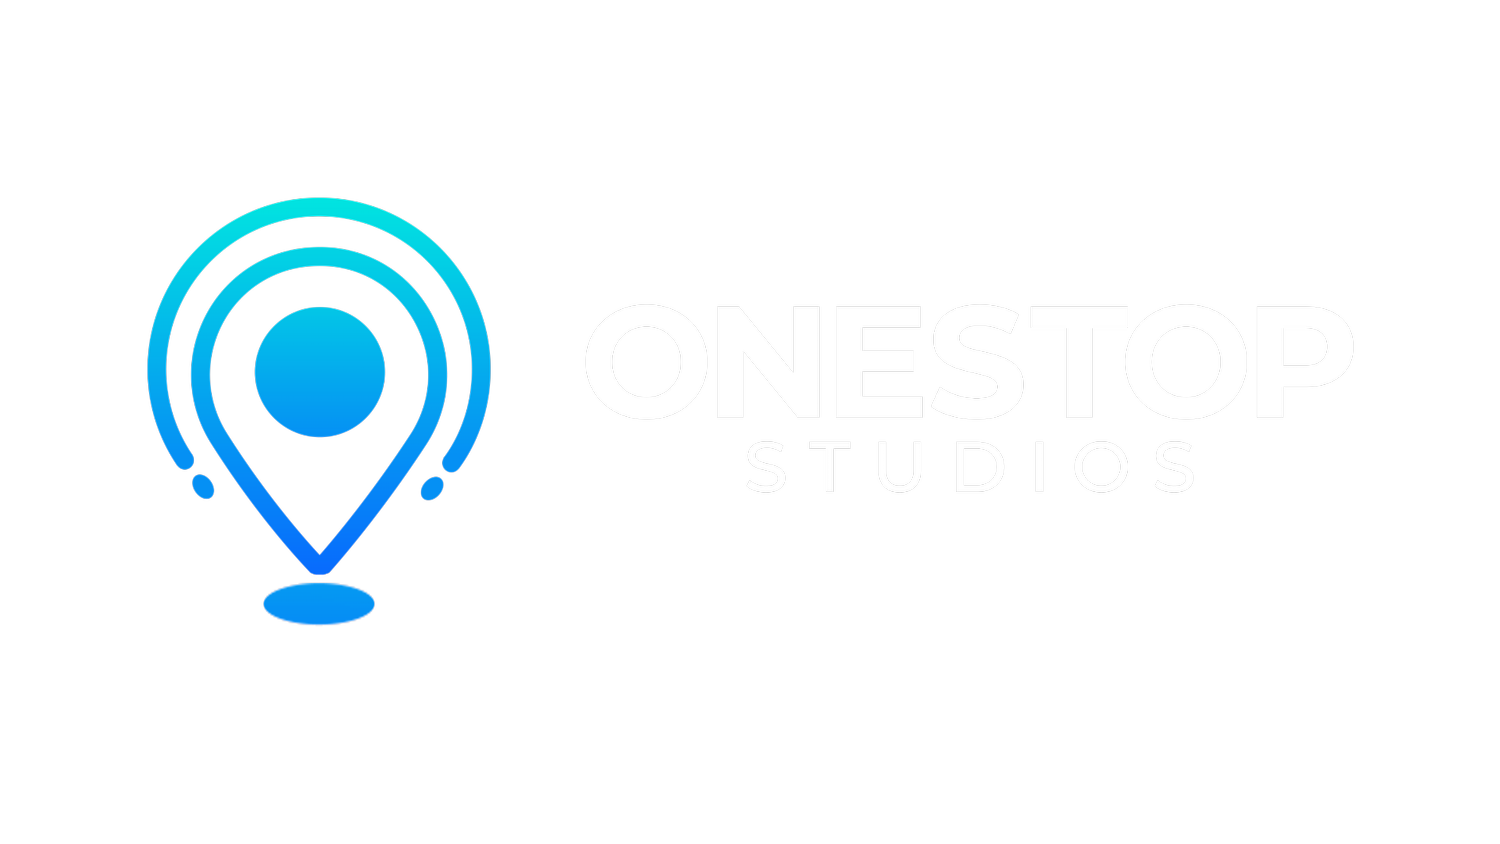 We Are OneStop Studios